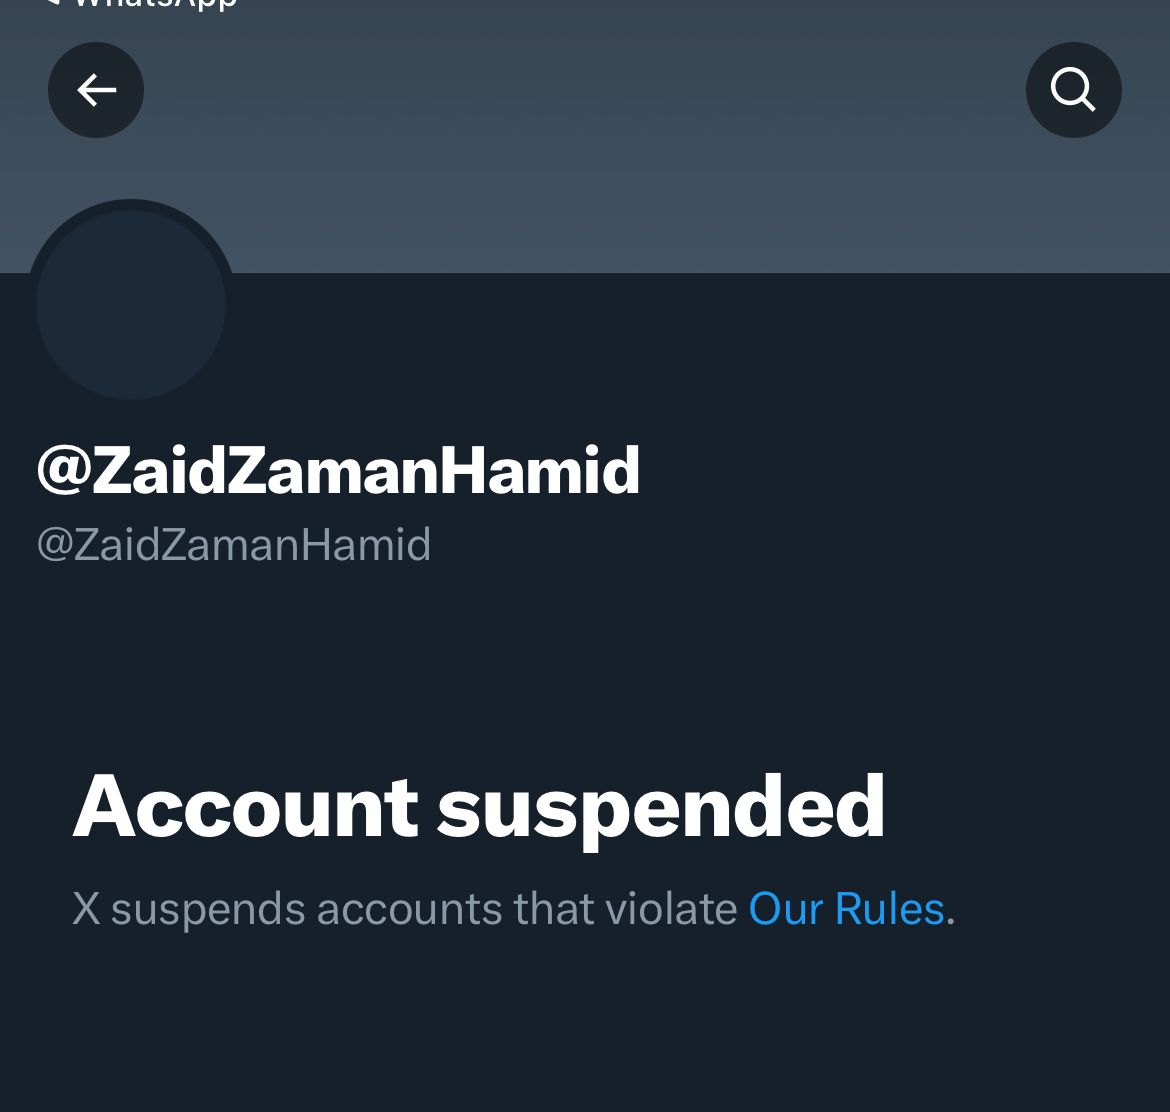 @XEng @ZaidZamanHamid
Please activate this account